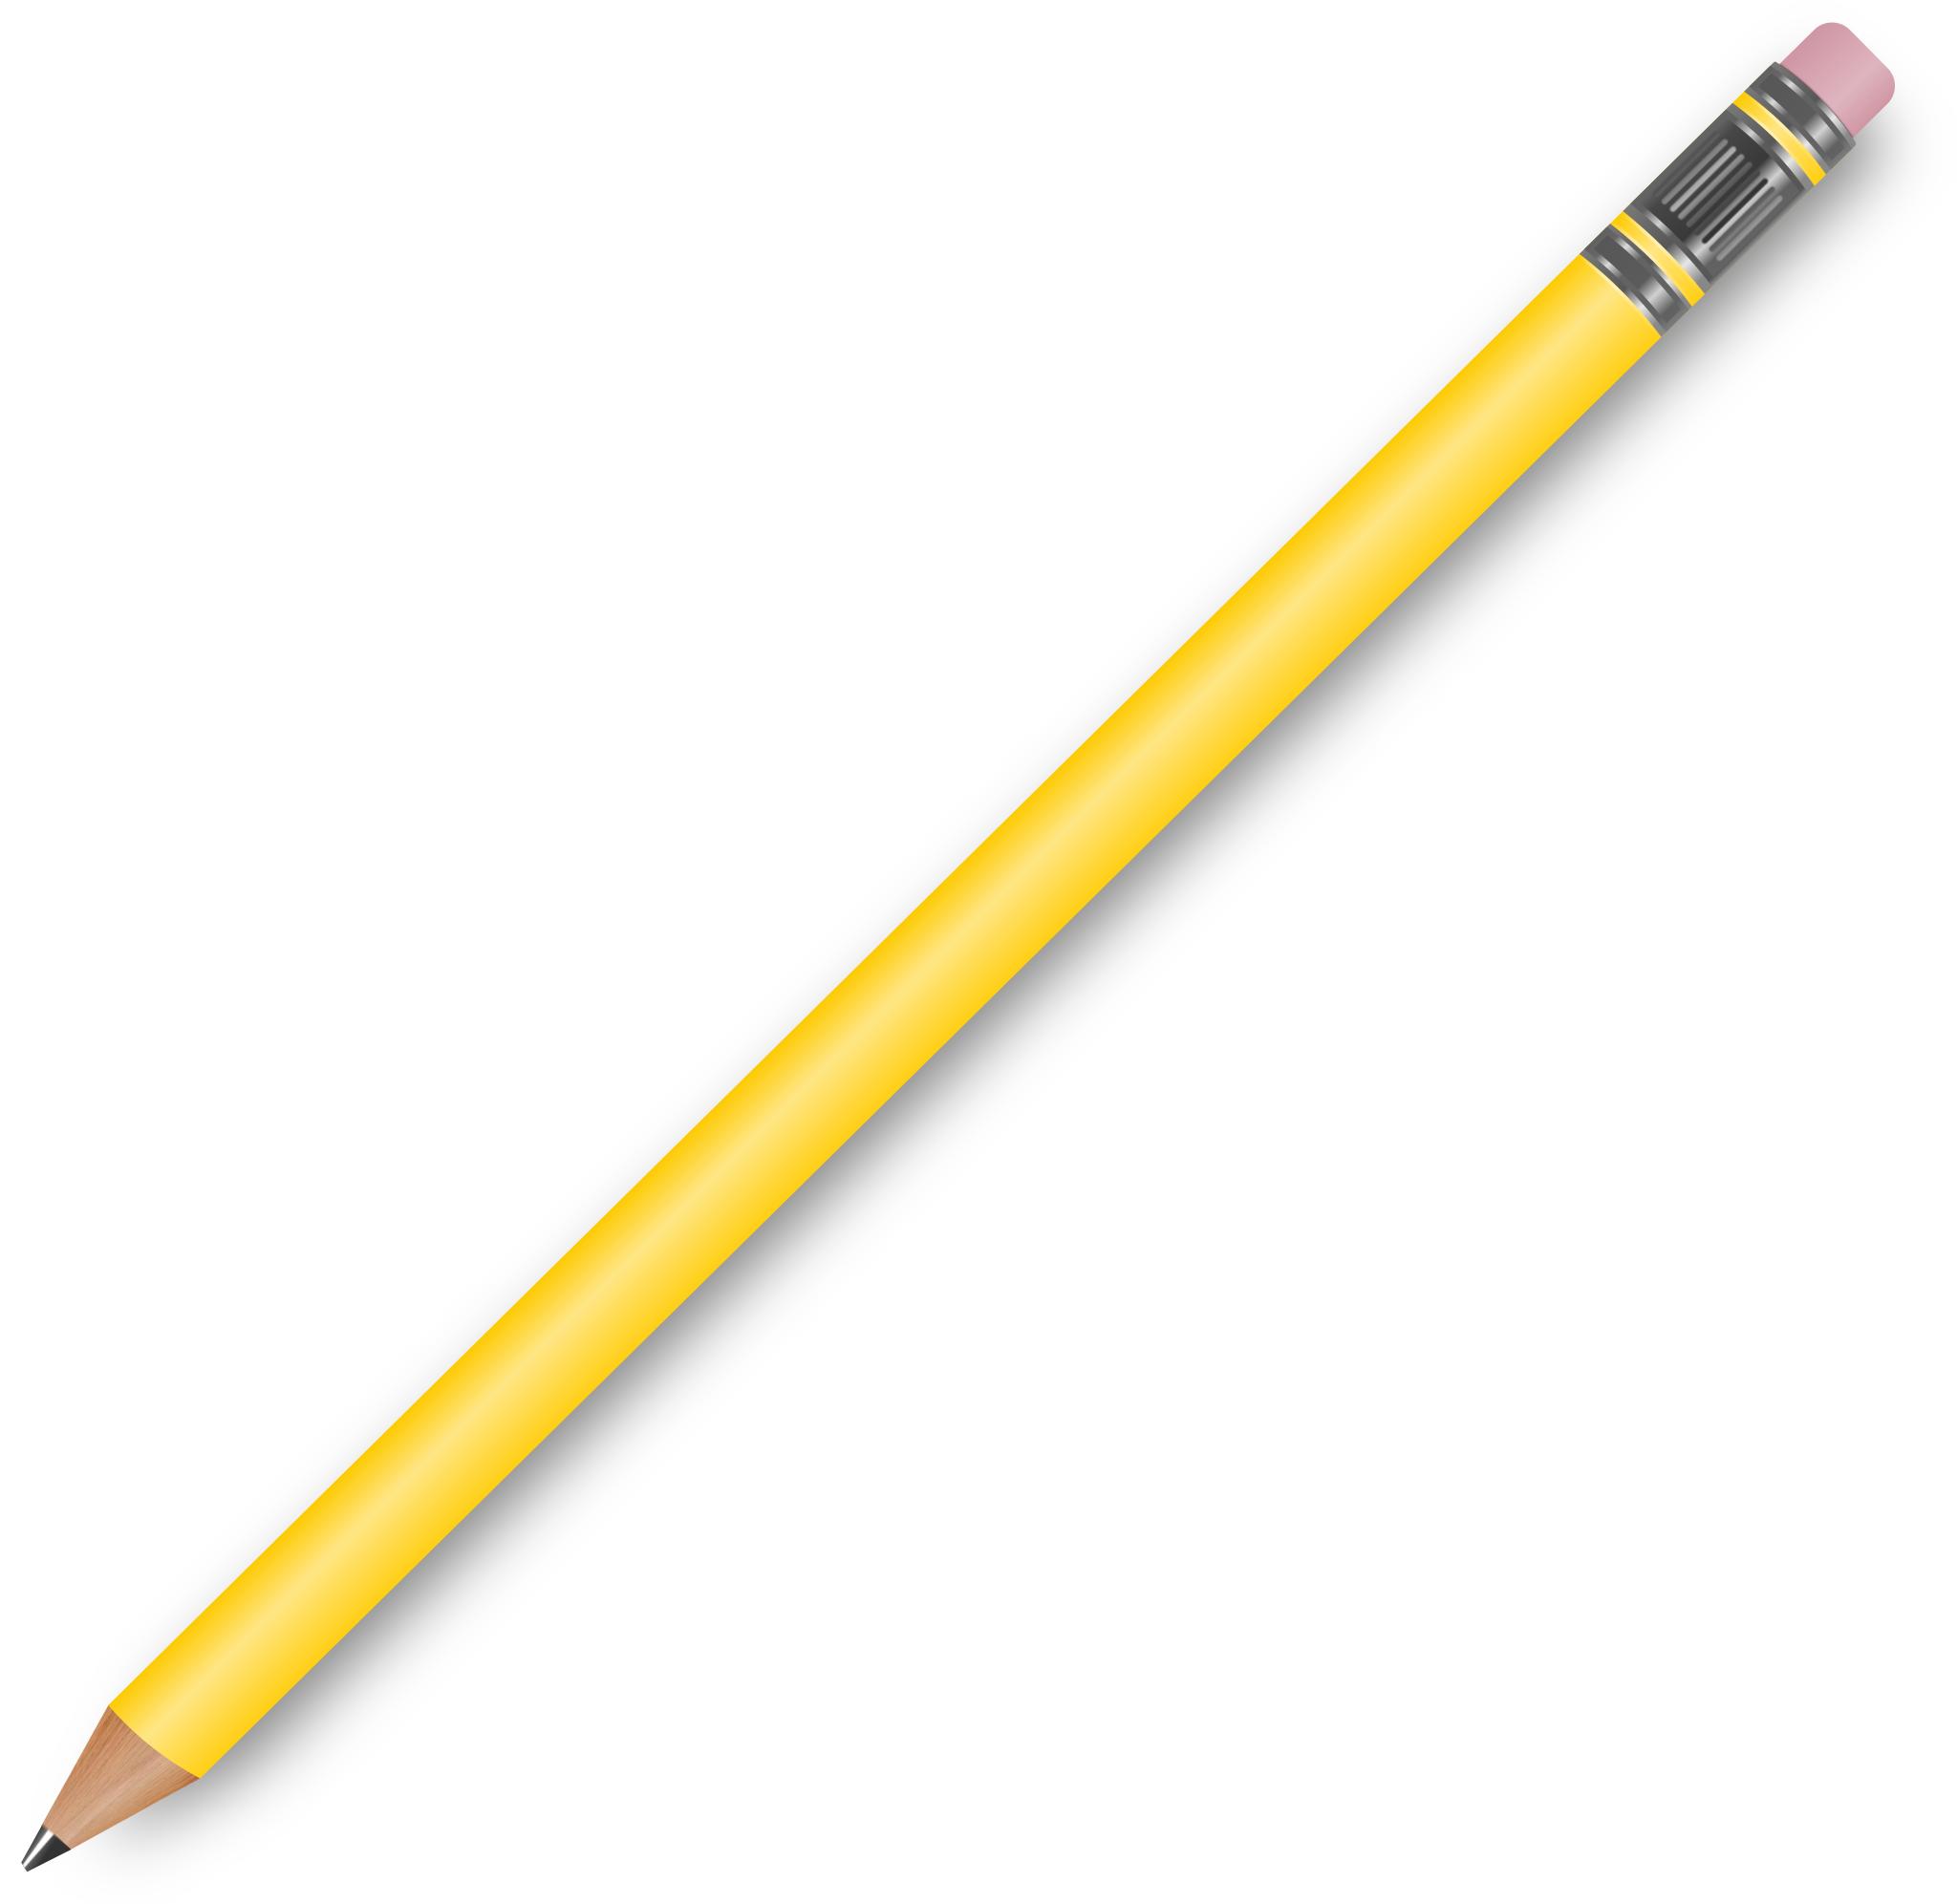 Карандаш на прозрачном фоне. Прозрачный карандаш. Карандашт прозрачном фоне. Желтый карандаш на прозрачном фоне.